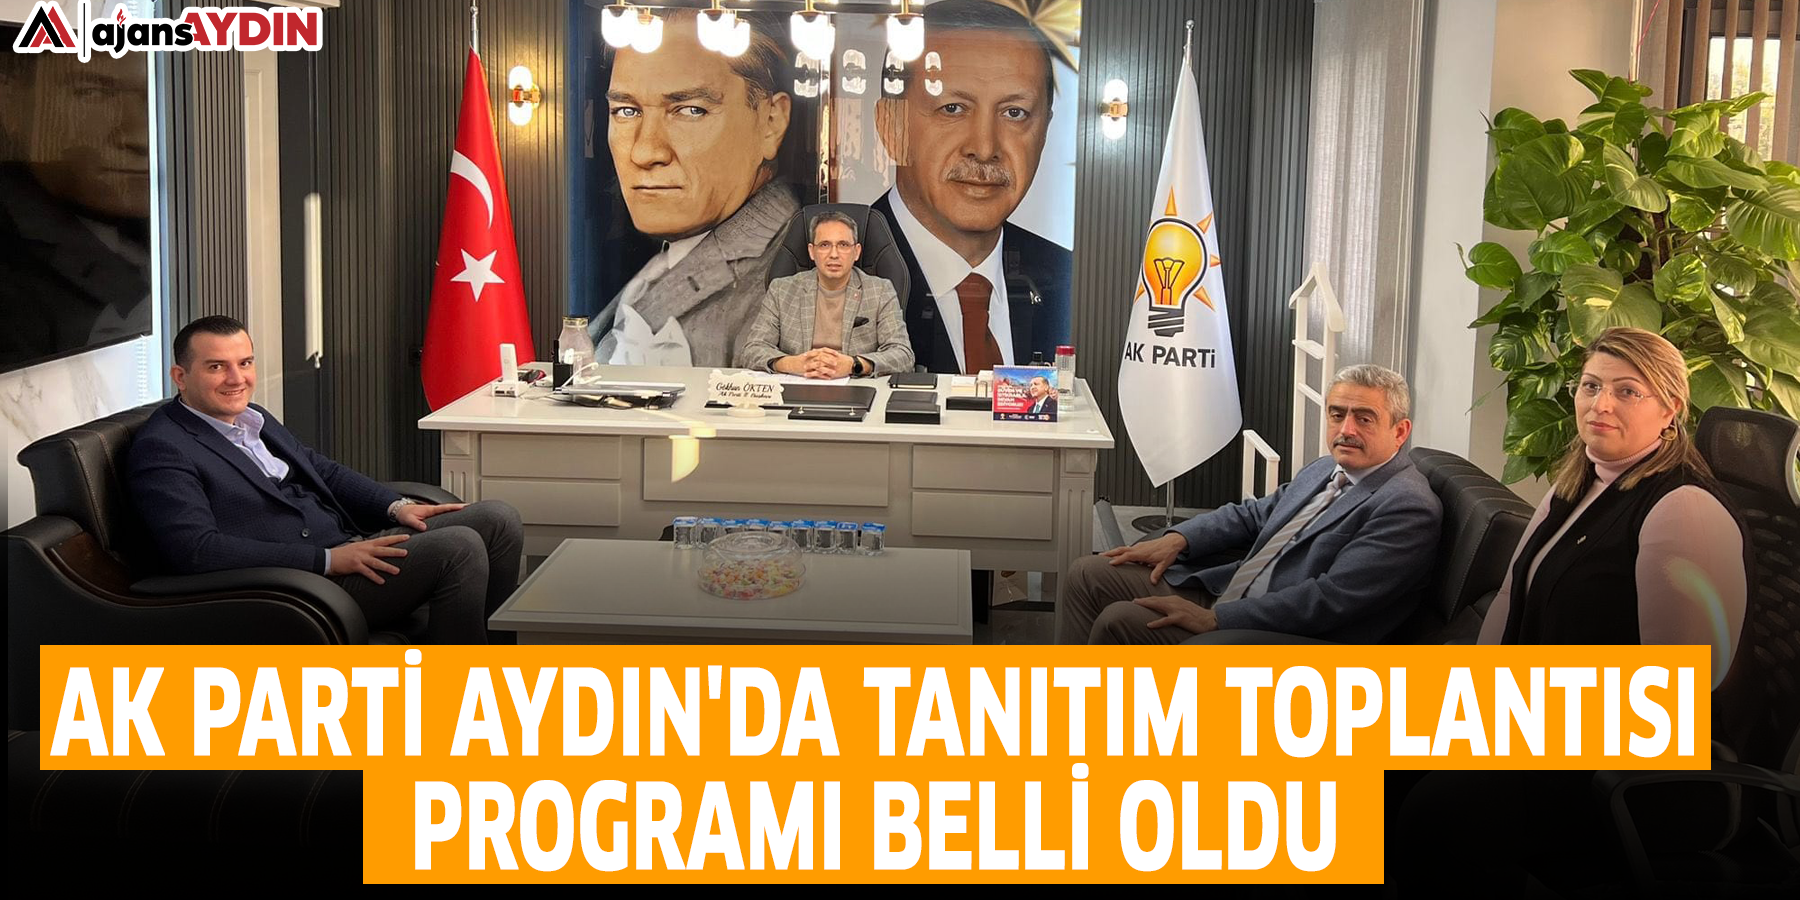 AK Parti Aydın'da tanıtım toplantısı programı belli oldu